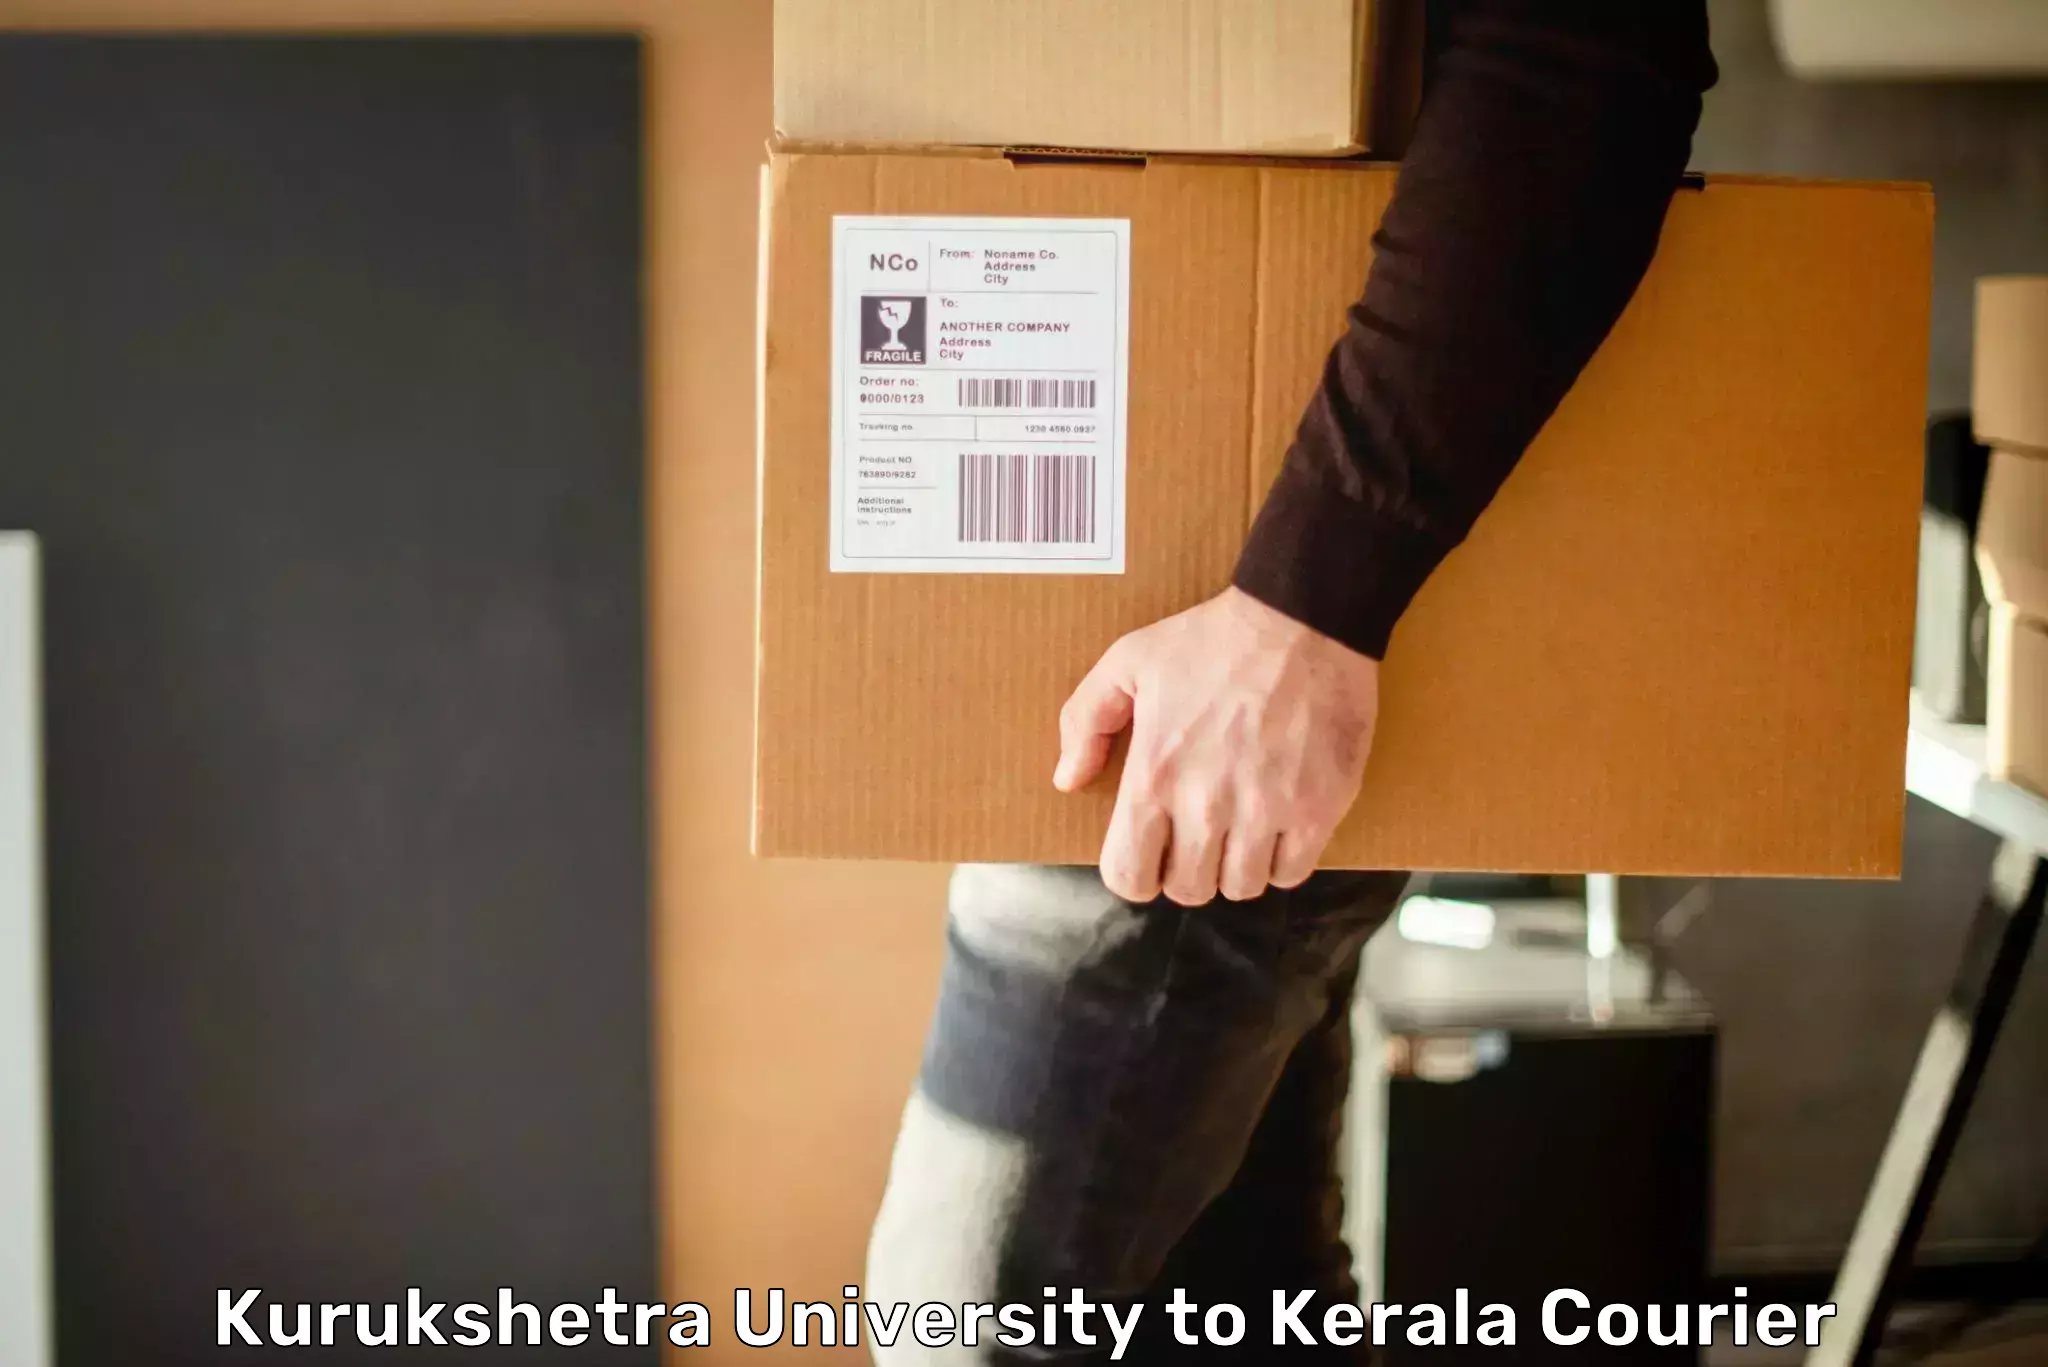 Urban courier service Kurukshetra University to Vaikom